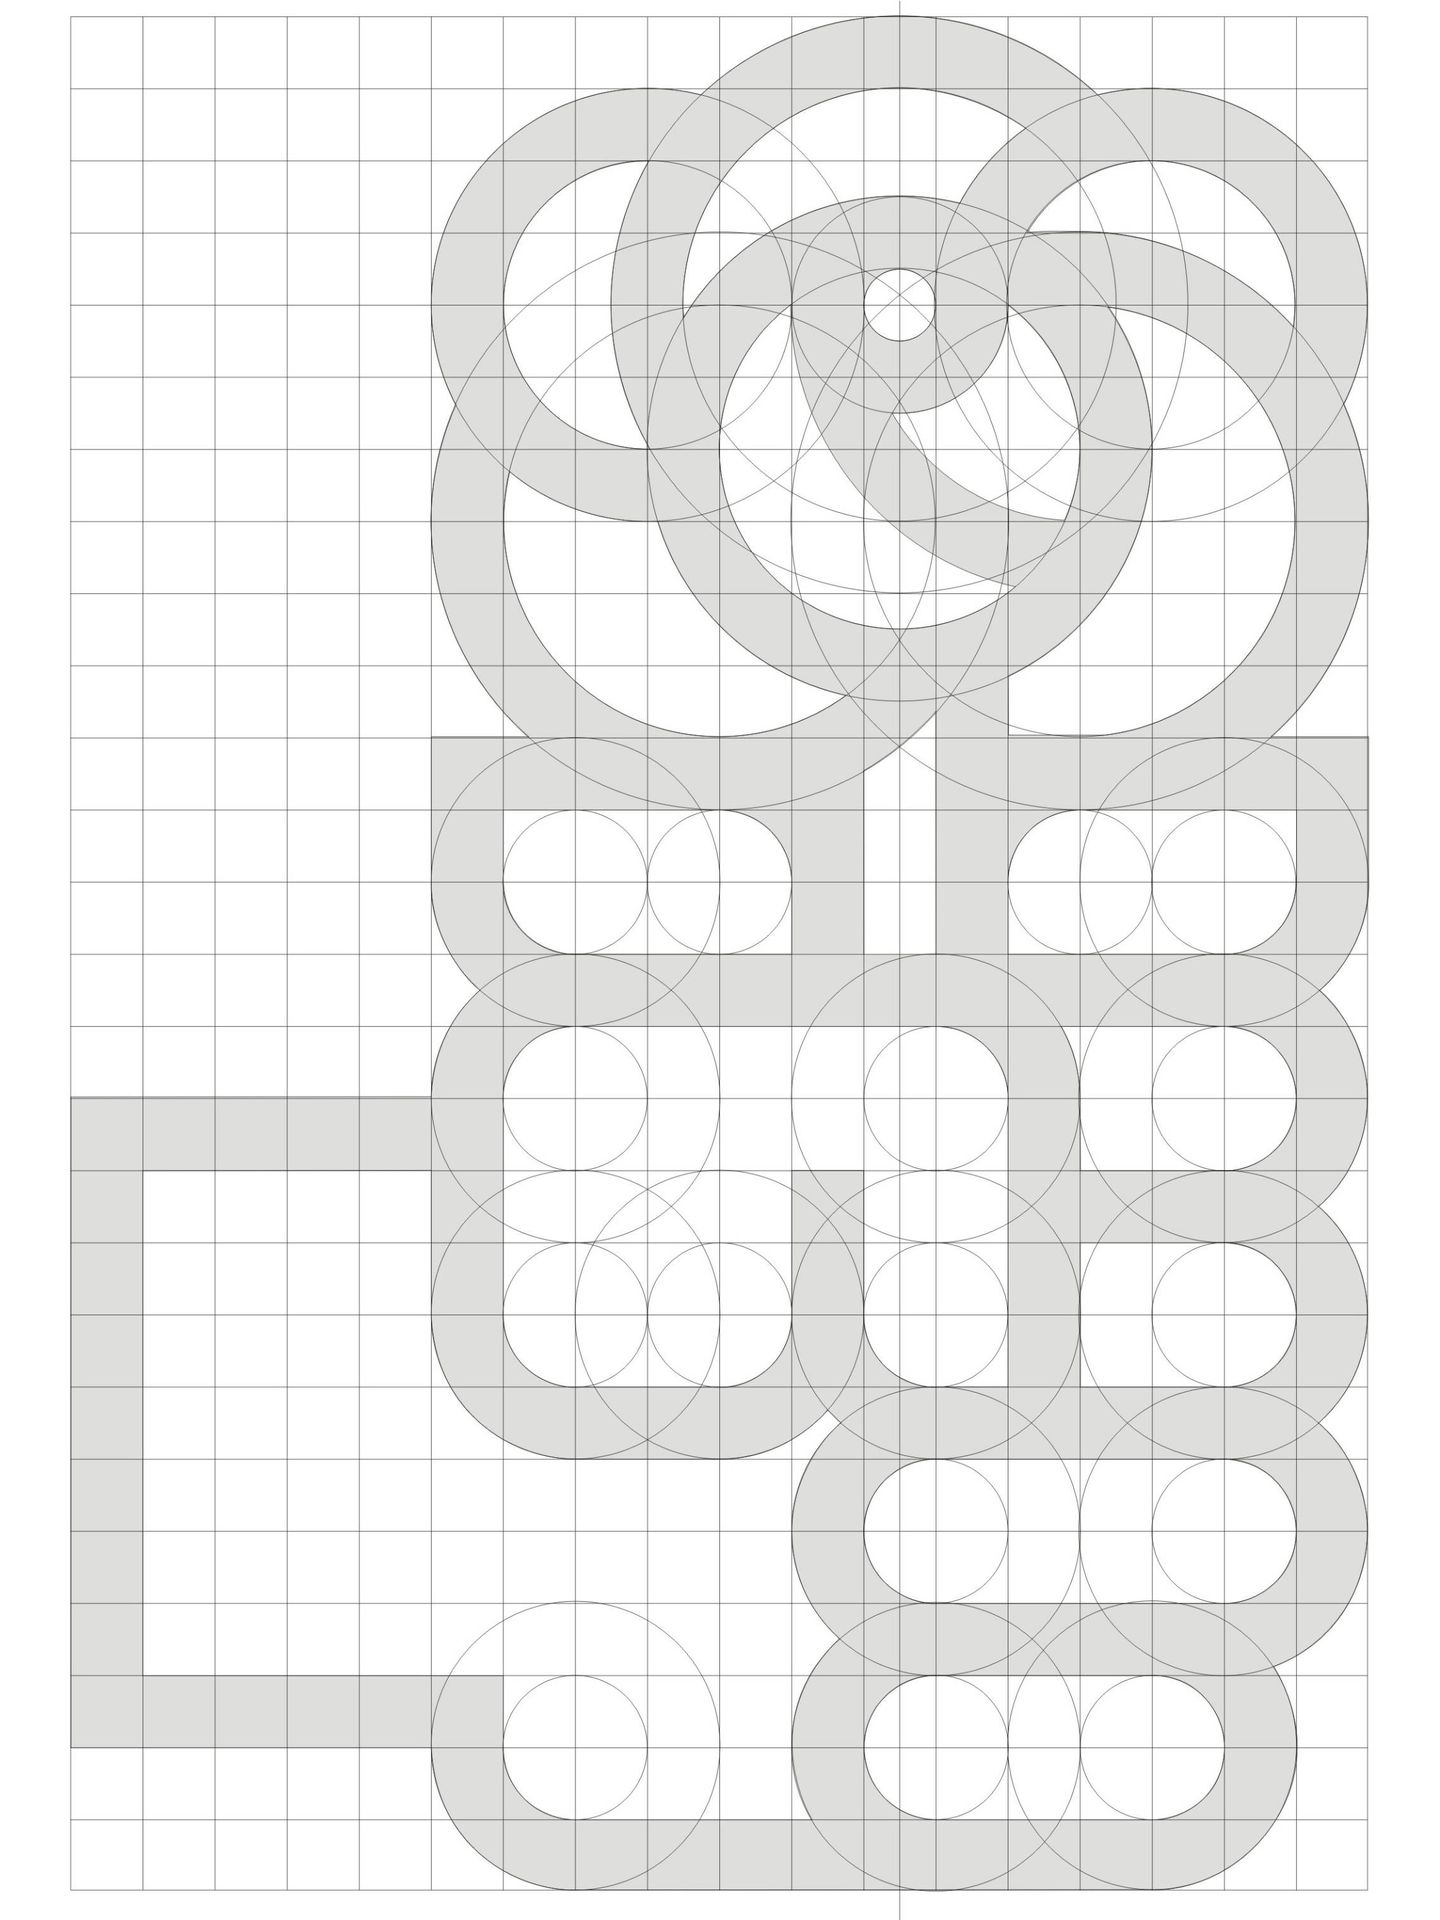 El logo del PSOE, en construcción. (Estudio Cruz más Cruz)